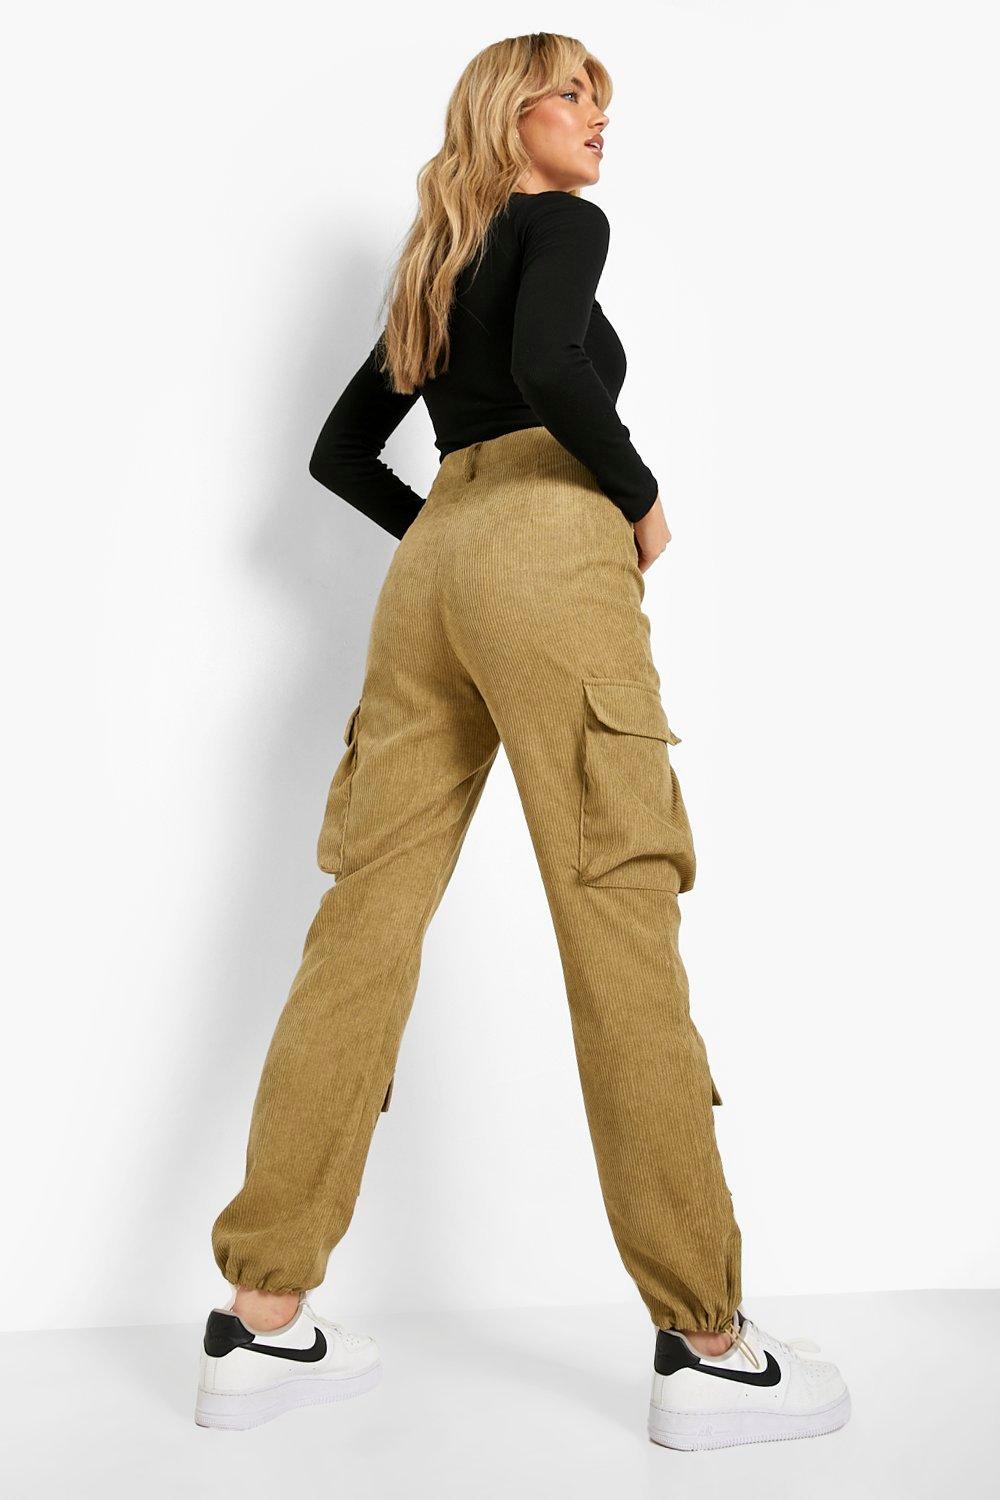 3 pantalons pour femmes pour 3 occasions différentes